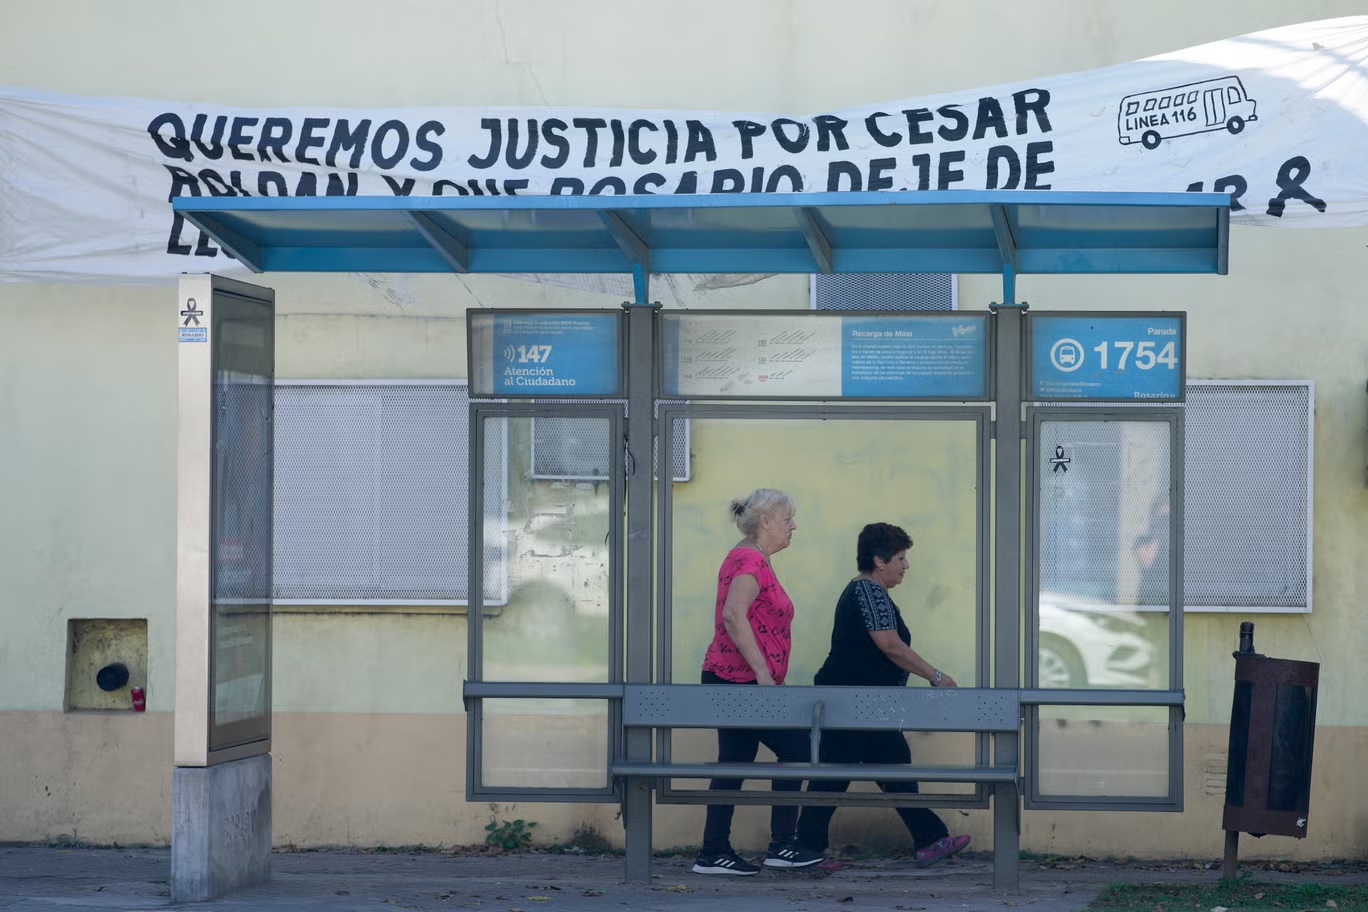 لافتة معلقة فوق محطة للحافلات تطالب بالعدالة لمقتل سائق الحافلة سيزار رولدان في روزاريو (أ ب)